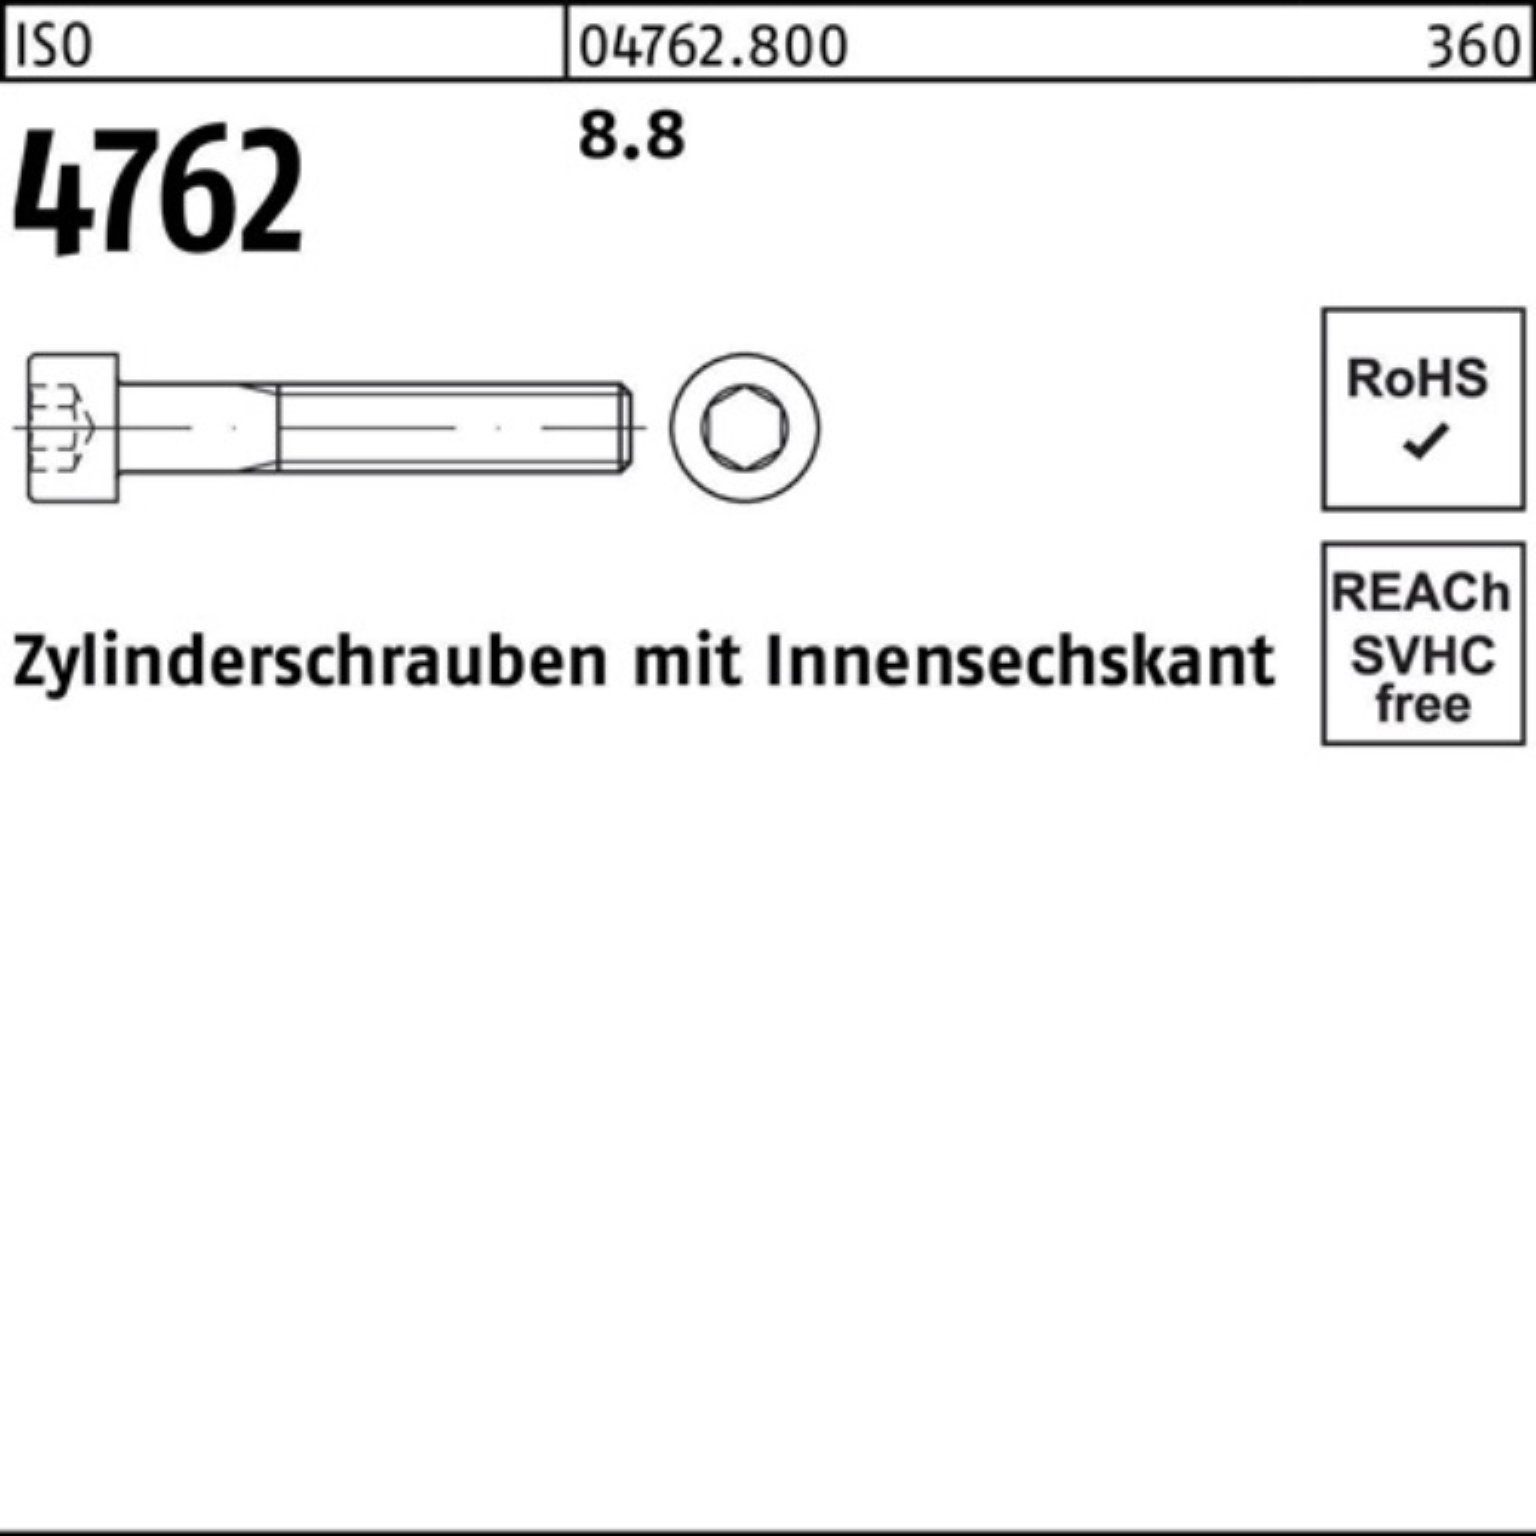 Innen-6kt Stück 100er 190 1 4762 Reyher I Pack 8.8 Zylinderschraube M36x ISO Zylinderschraube